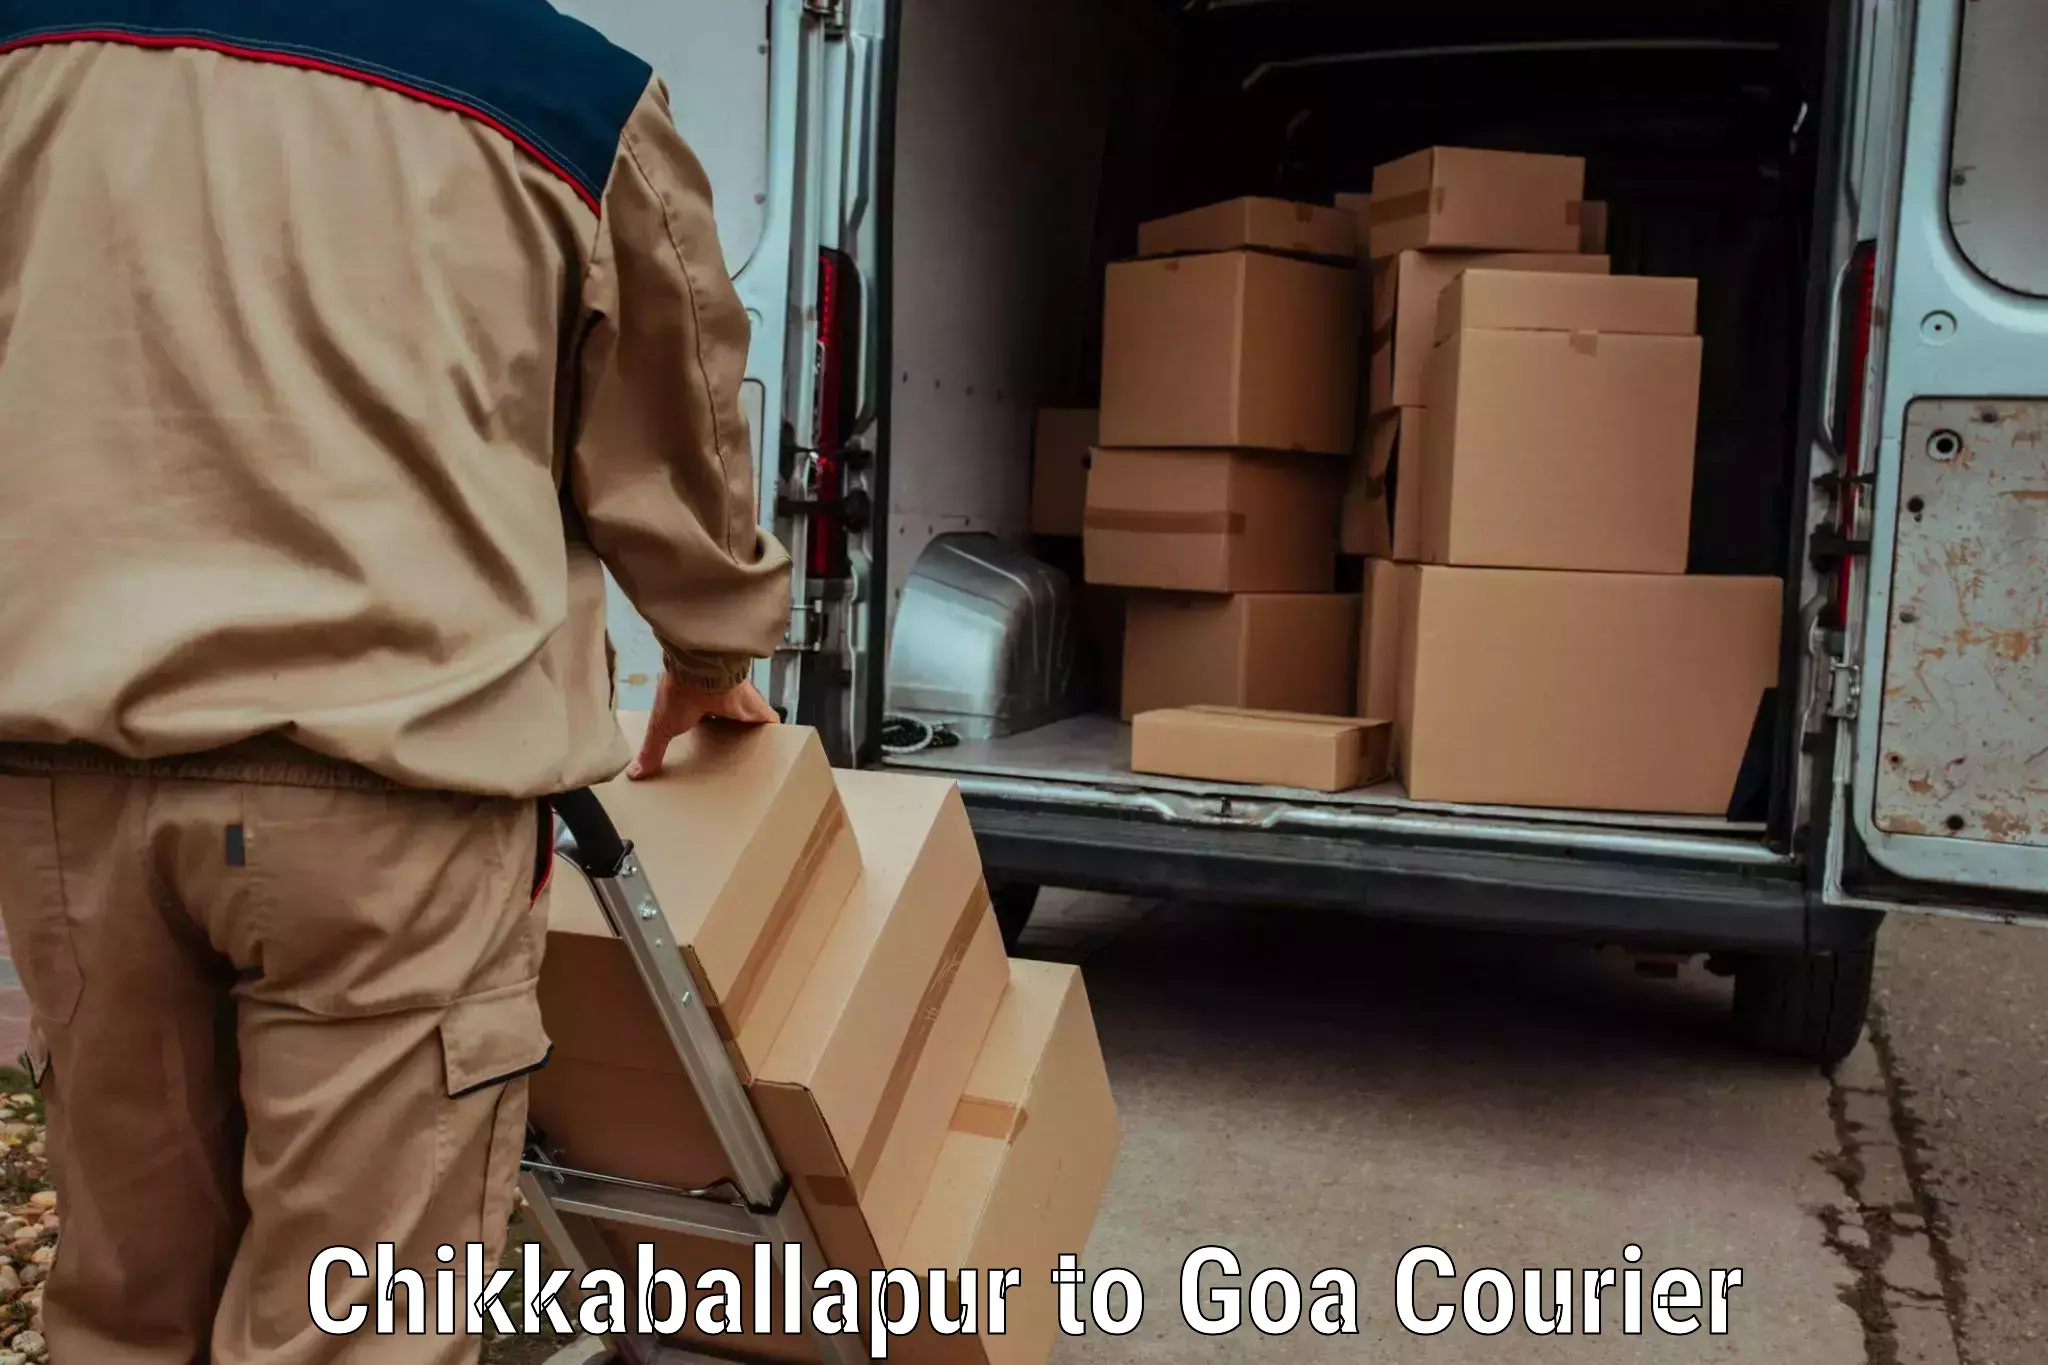 Express postal services Chikkaballapur to NIT Goa